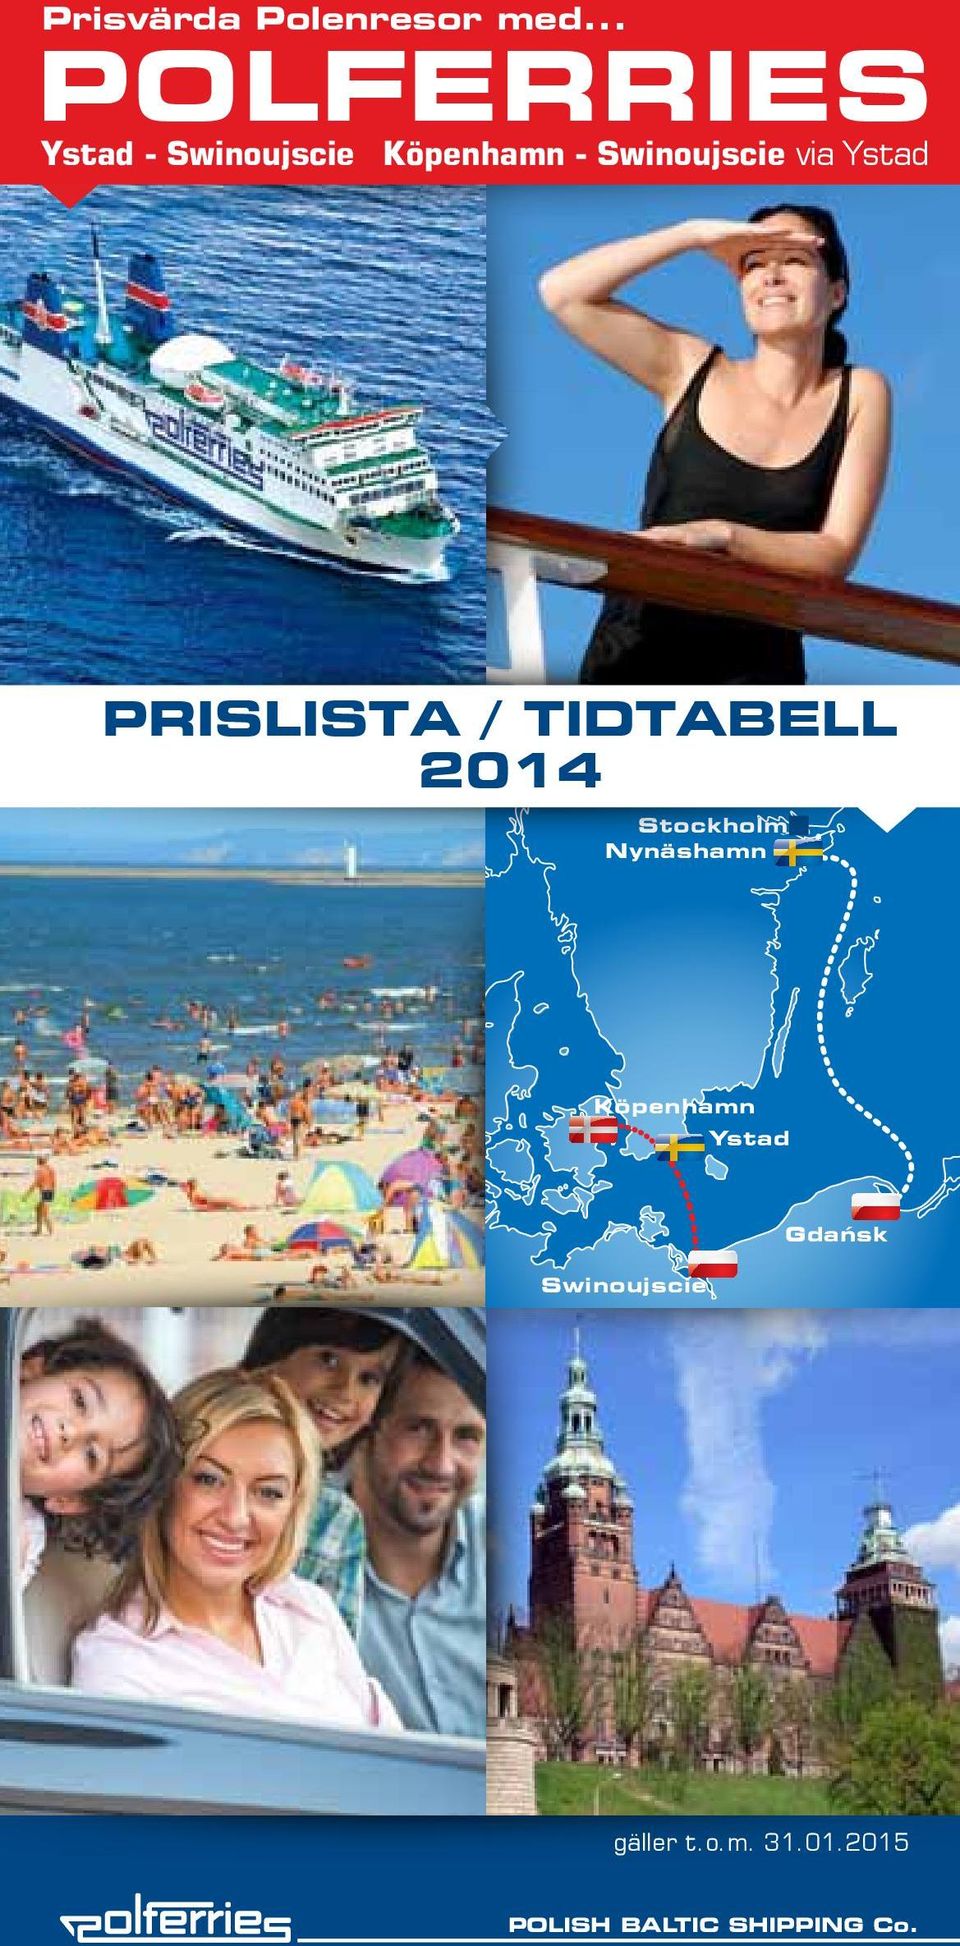 PRISLISTA / TIDTABELL 2014 Stockholm Nynäshamn